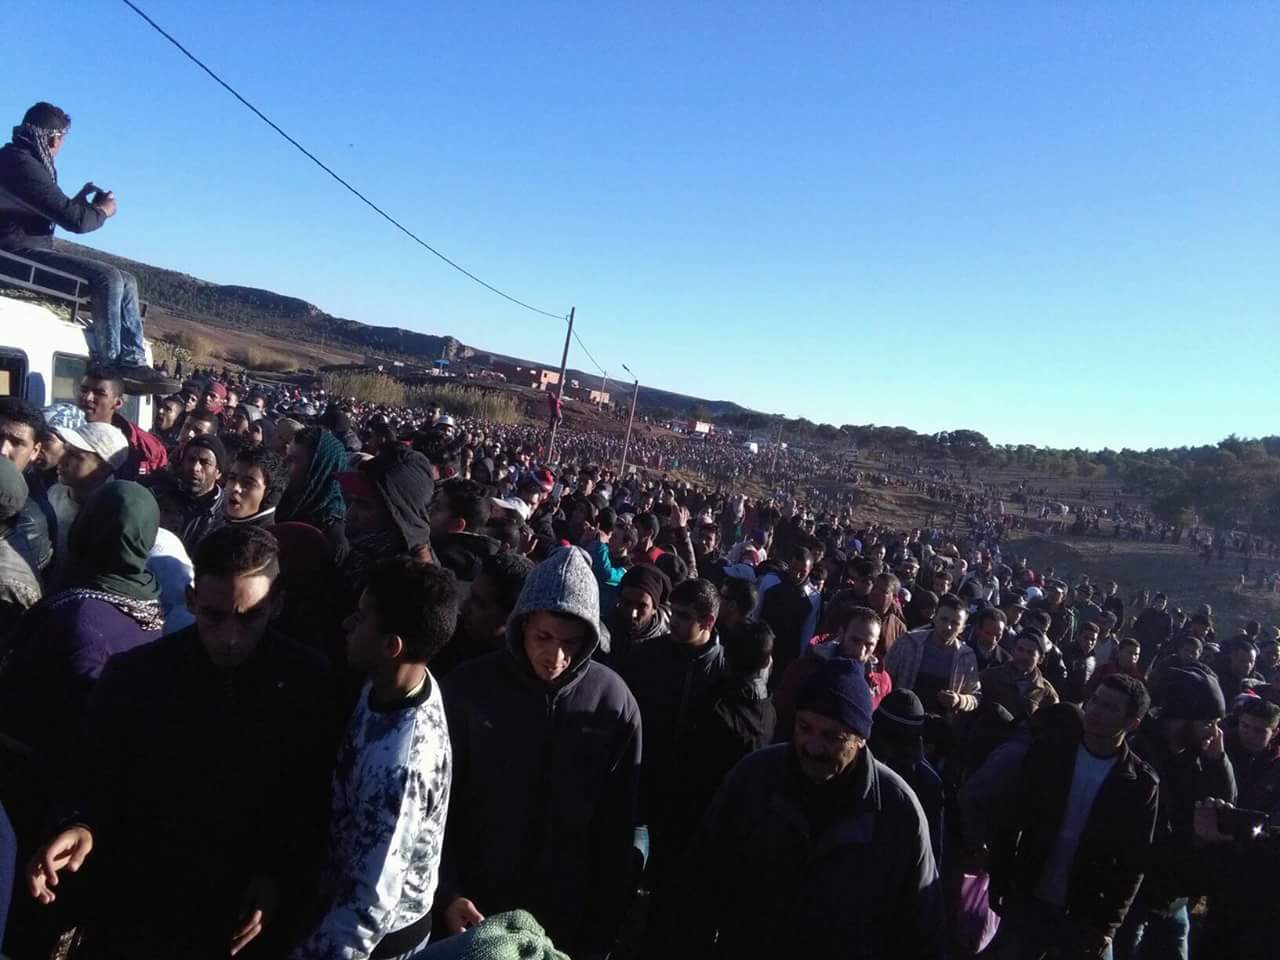 سكان جرادة يفتحون صفحة تواصل مع السلطات وسط الاحتجاجات